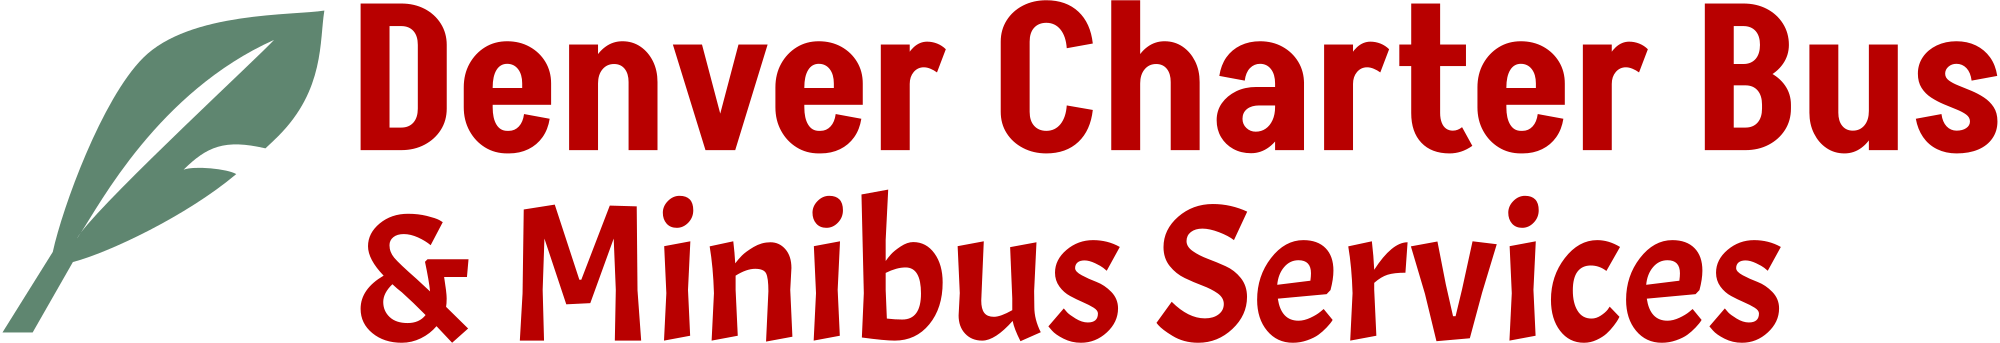 Charter Bus Company Denver logo